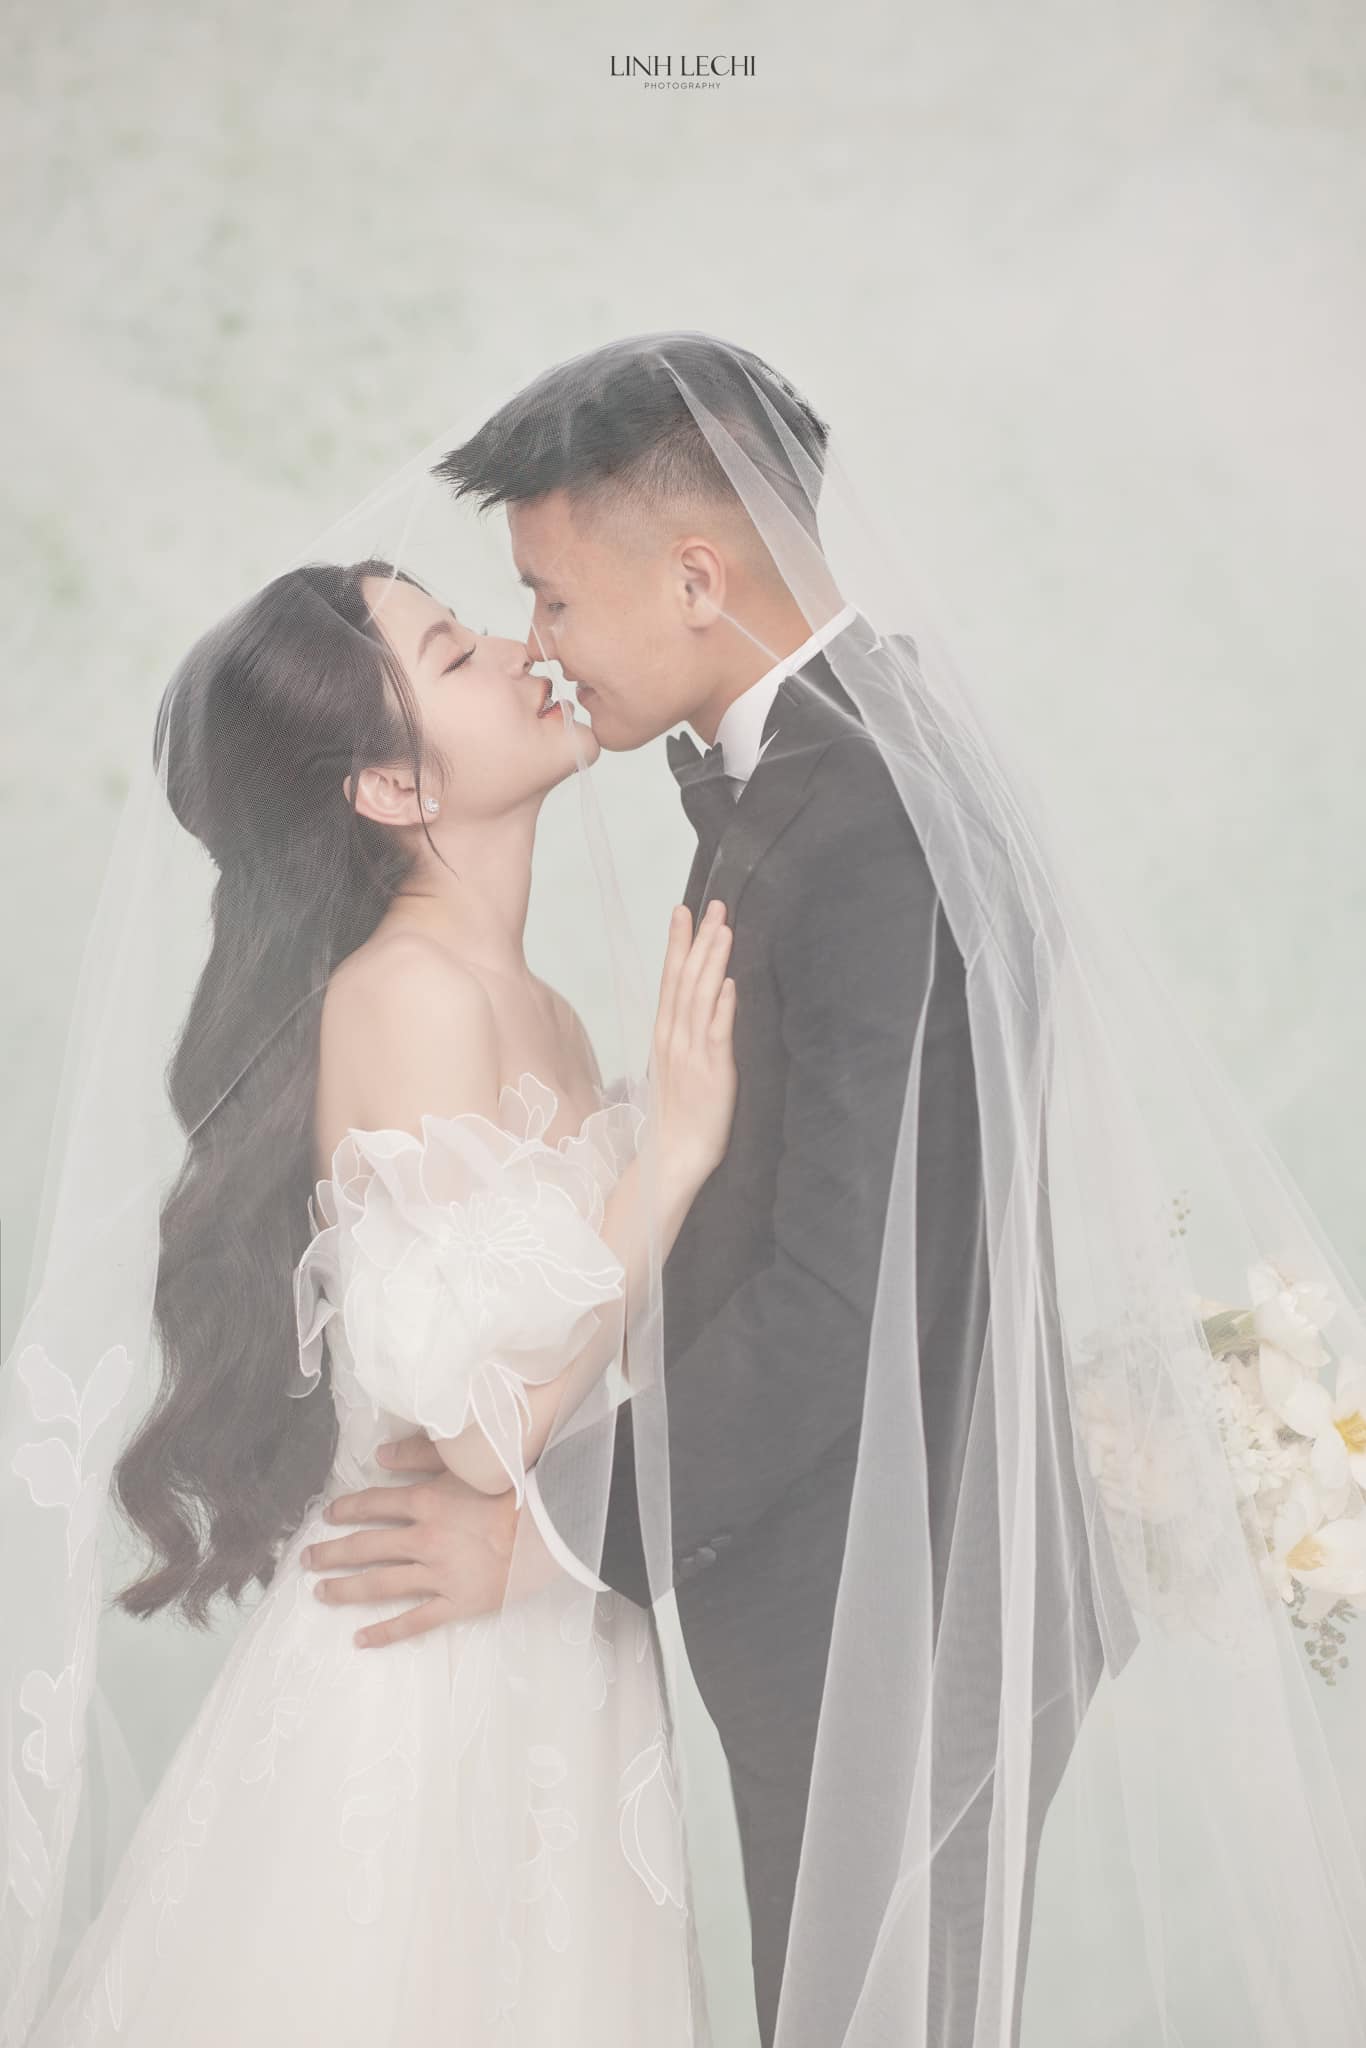 Quang Hải và Chu Thanh Huyền tung ảnh cưới, nhưng chiều cao 'bất ổn' của chú rể gây hoang mang - ảnh 4